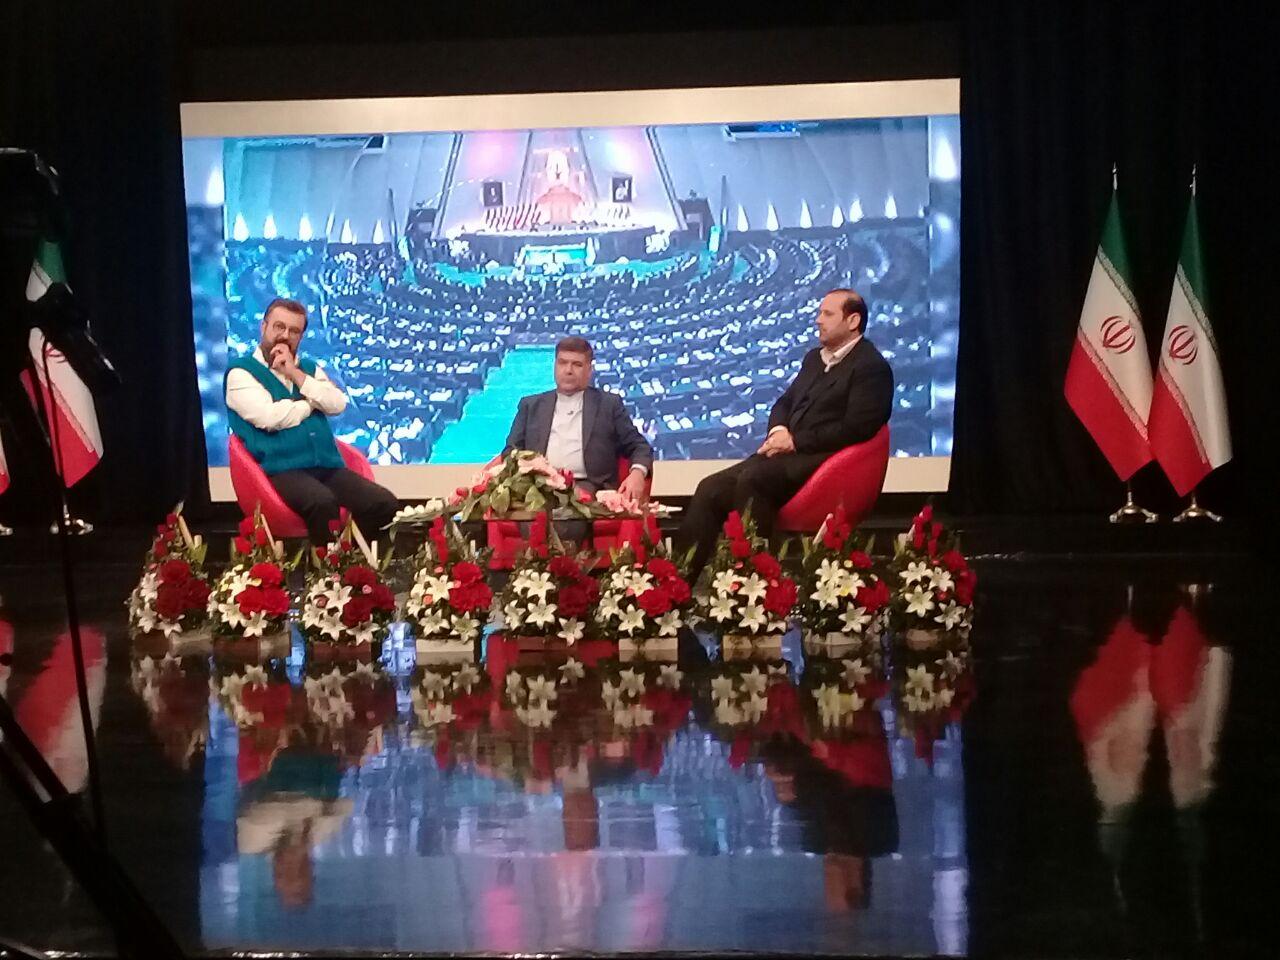 حضور شهردار اسلامشهر در برنامه زنده (( اینجا تهرانه)) از شبکه 5 سیما